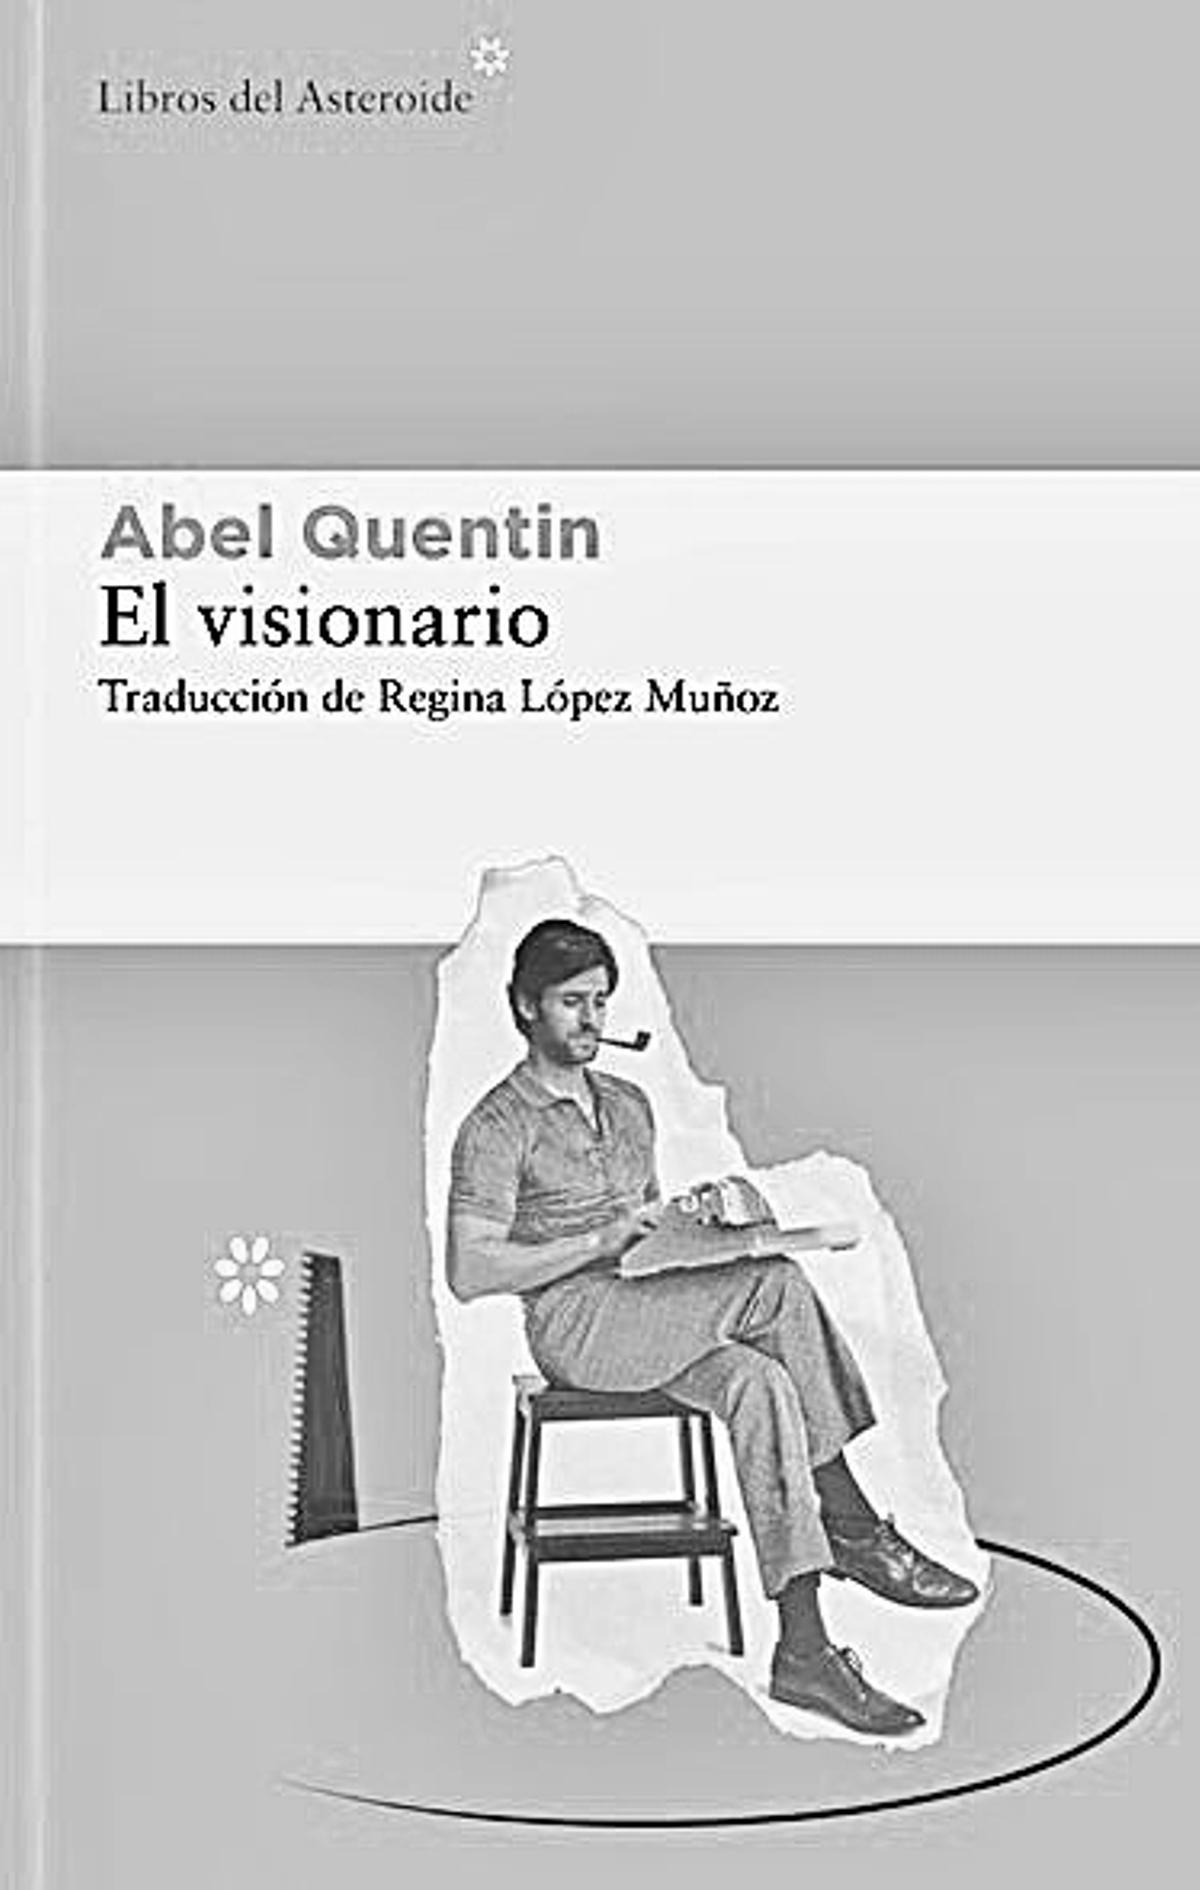 Abel Quentin  El visionario   Traducción de Regina López Muñoz  Libros del Asteroide  376 páginas / 22,95 euros